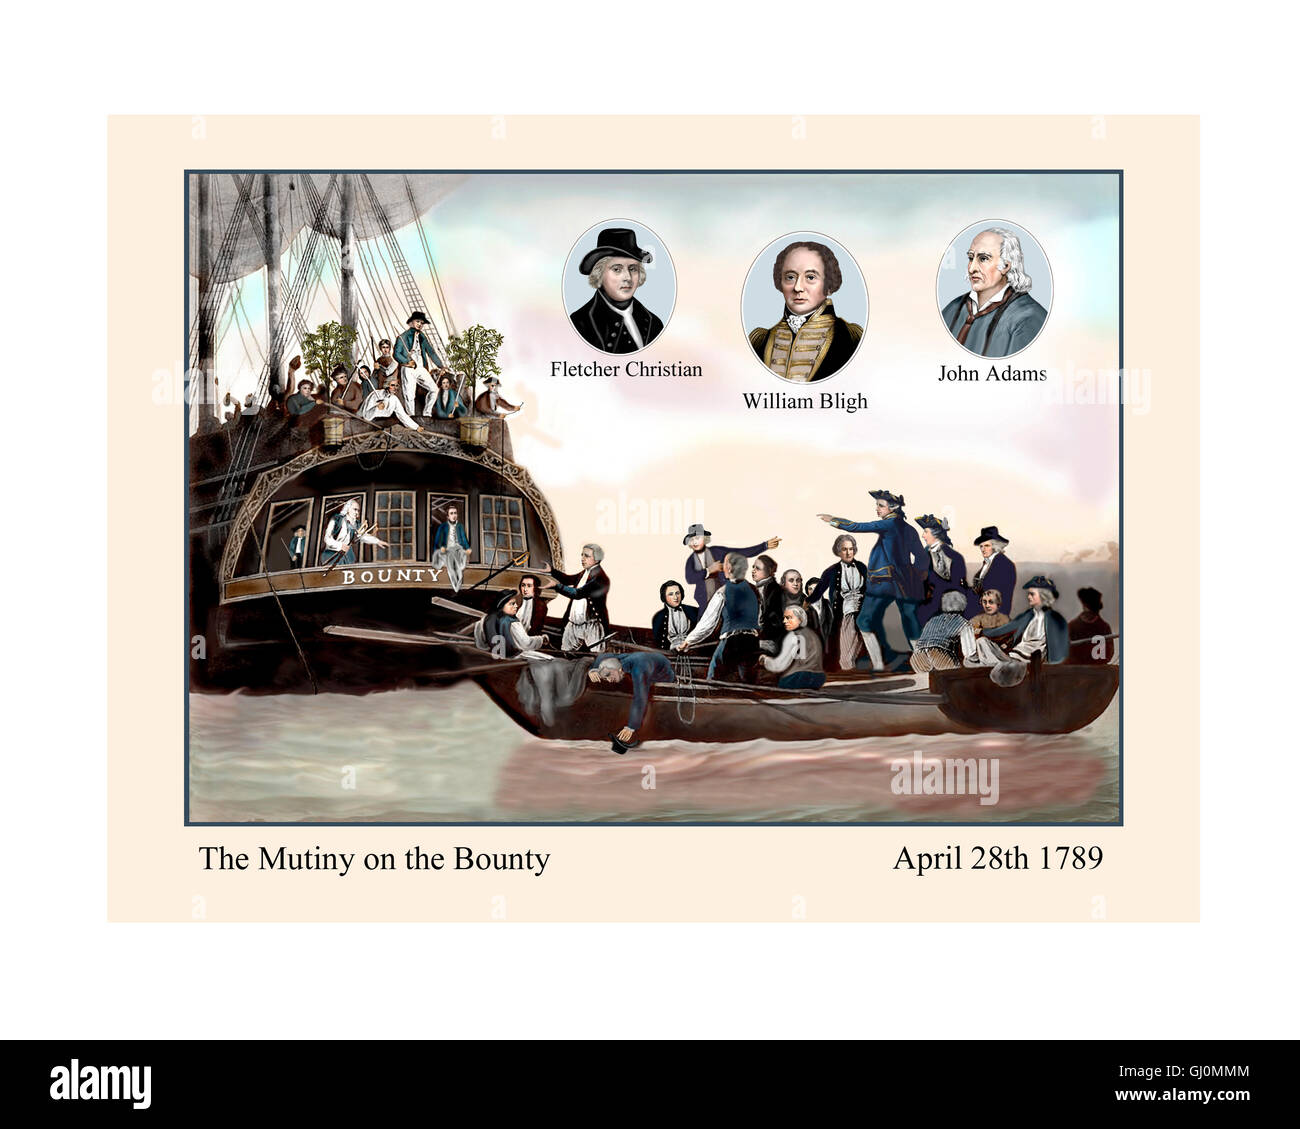 Motín en el Bounty, 28 de abril de 1789, la ilustración de un siglo xix imprimir afilada, re-establecer, re-colores con 3 añadido retratos Foto de stock